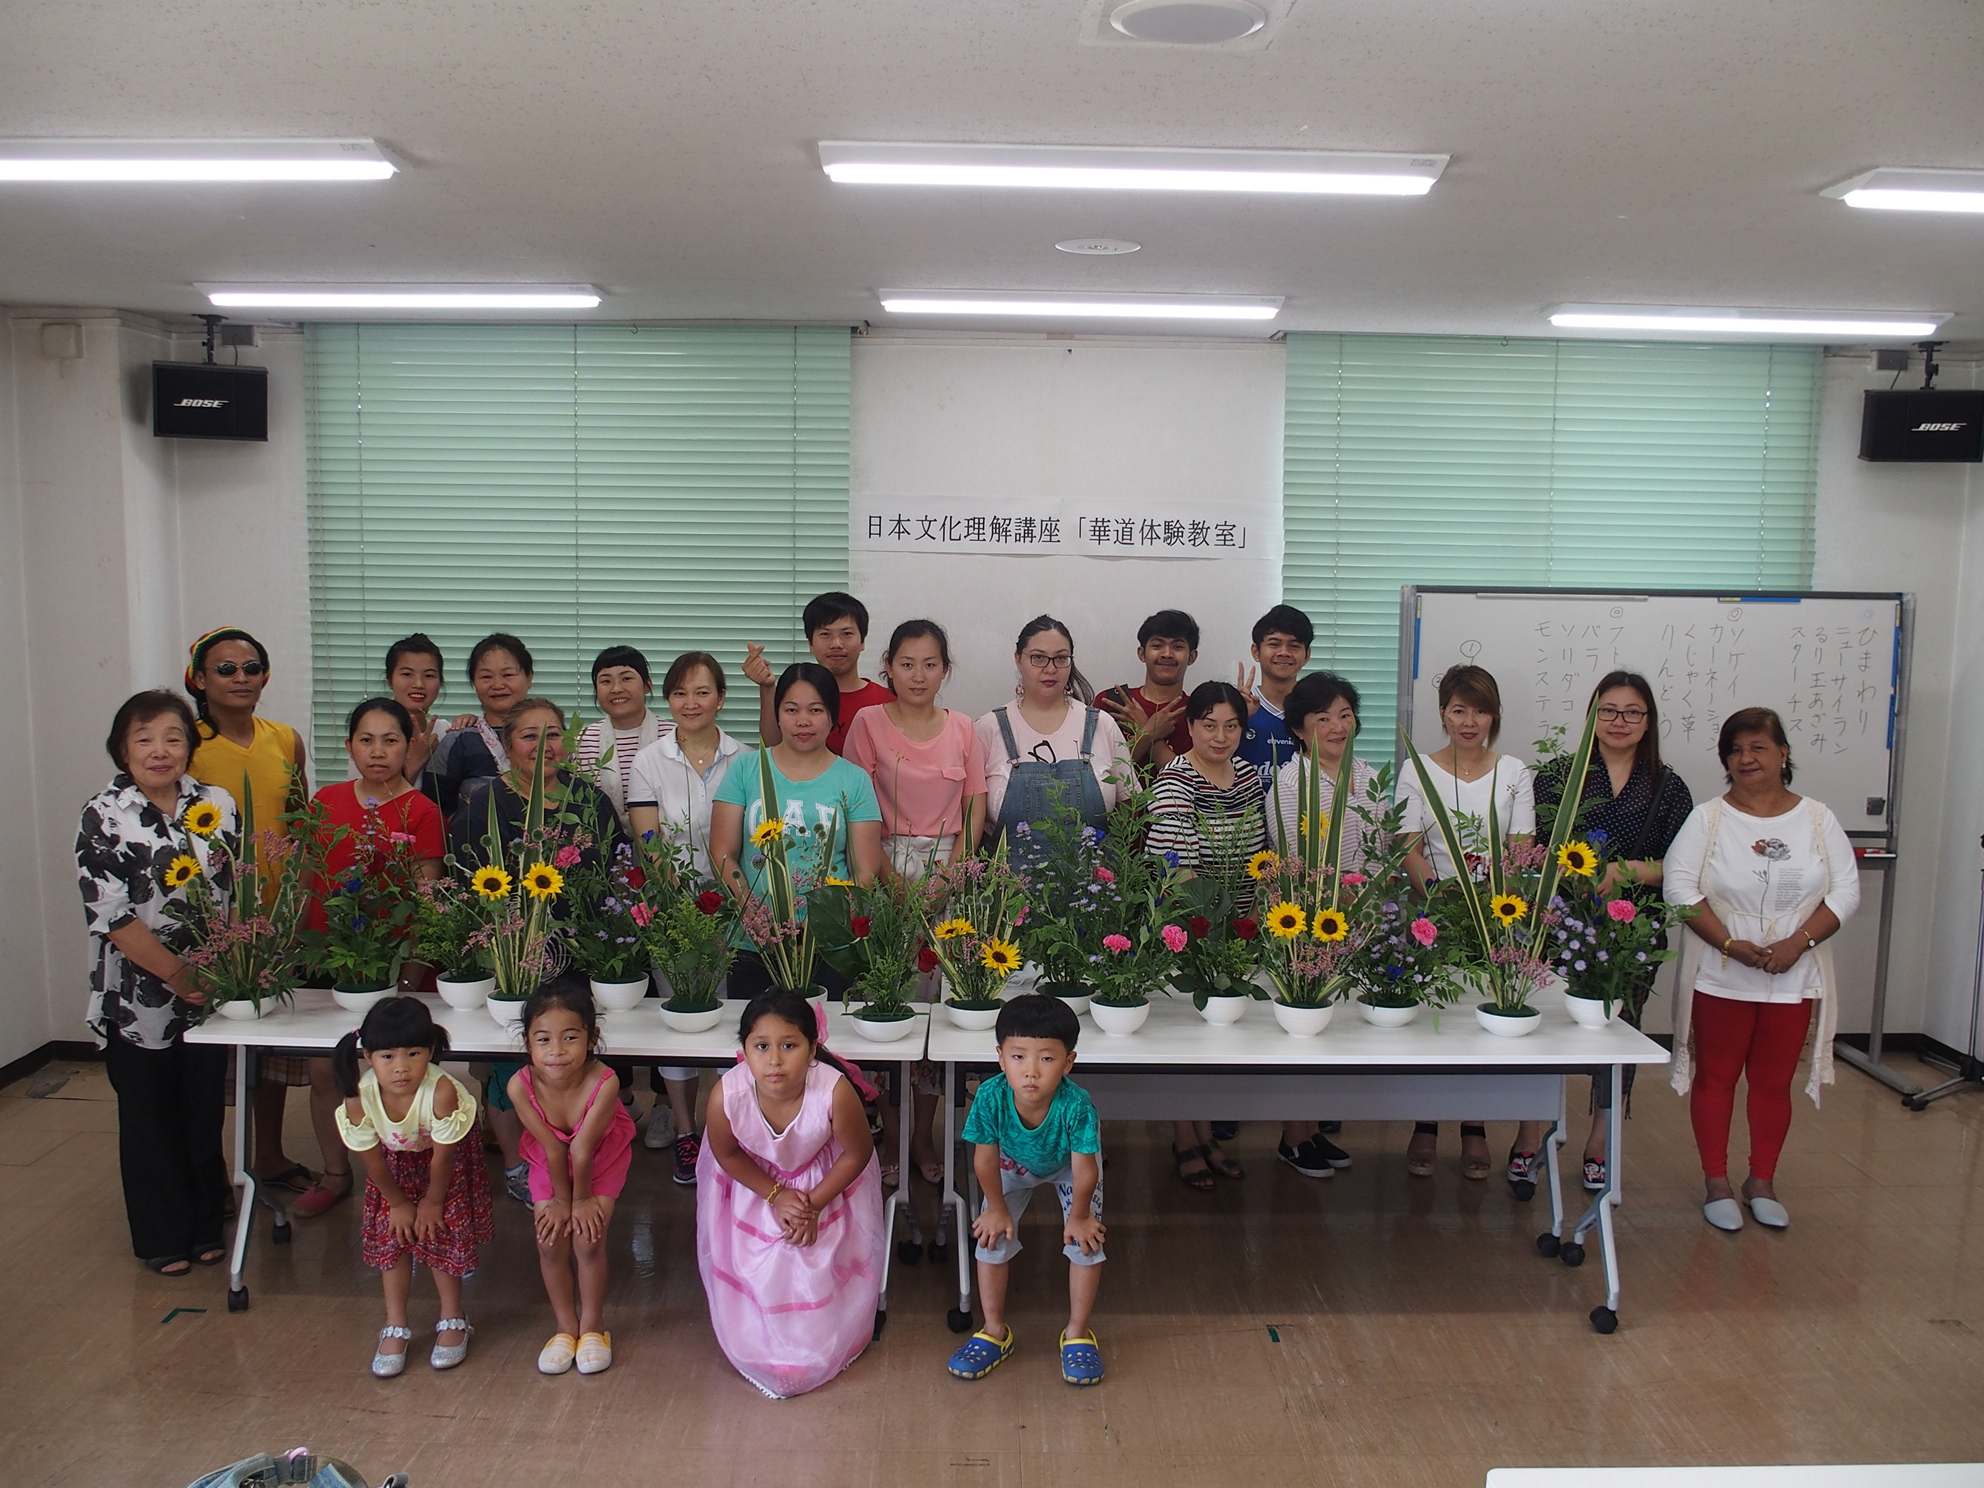 完成した生け花が並べられた台の後ろに並んで参加者達が記念撮影をしている写真